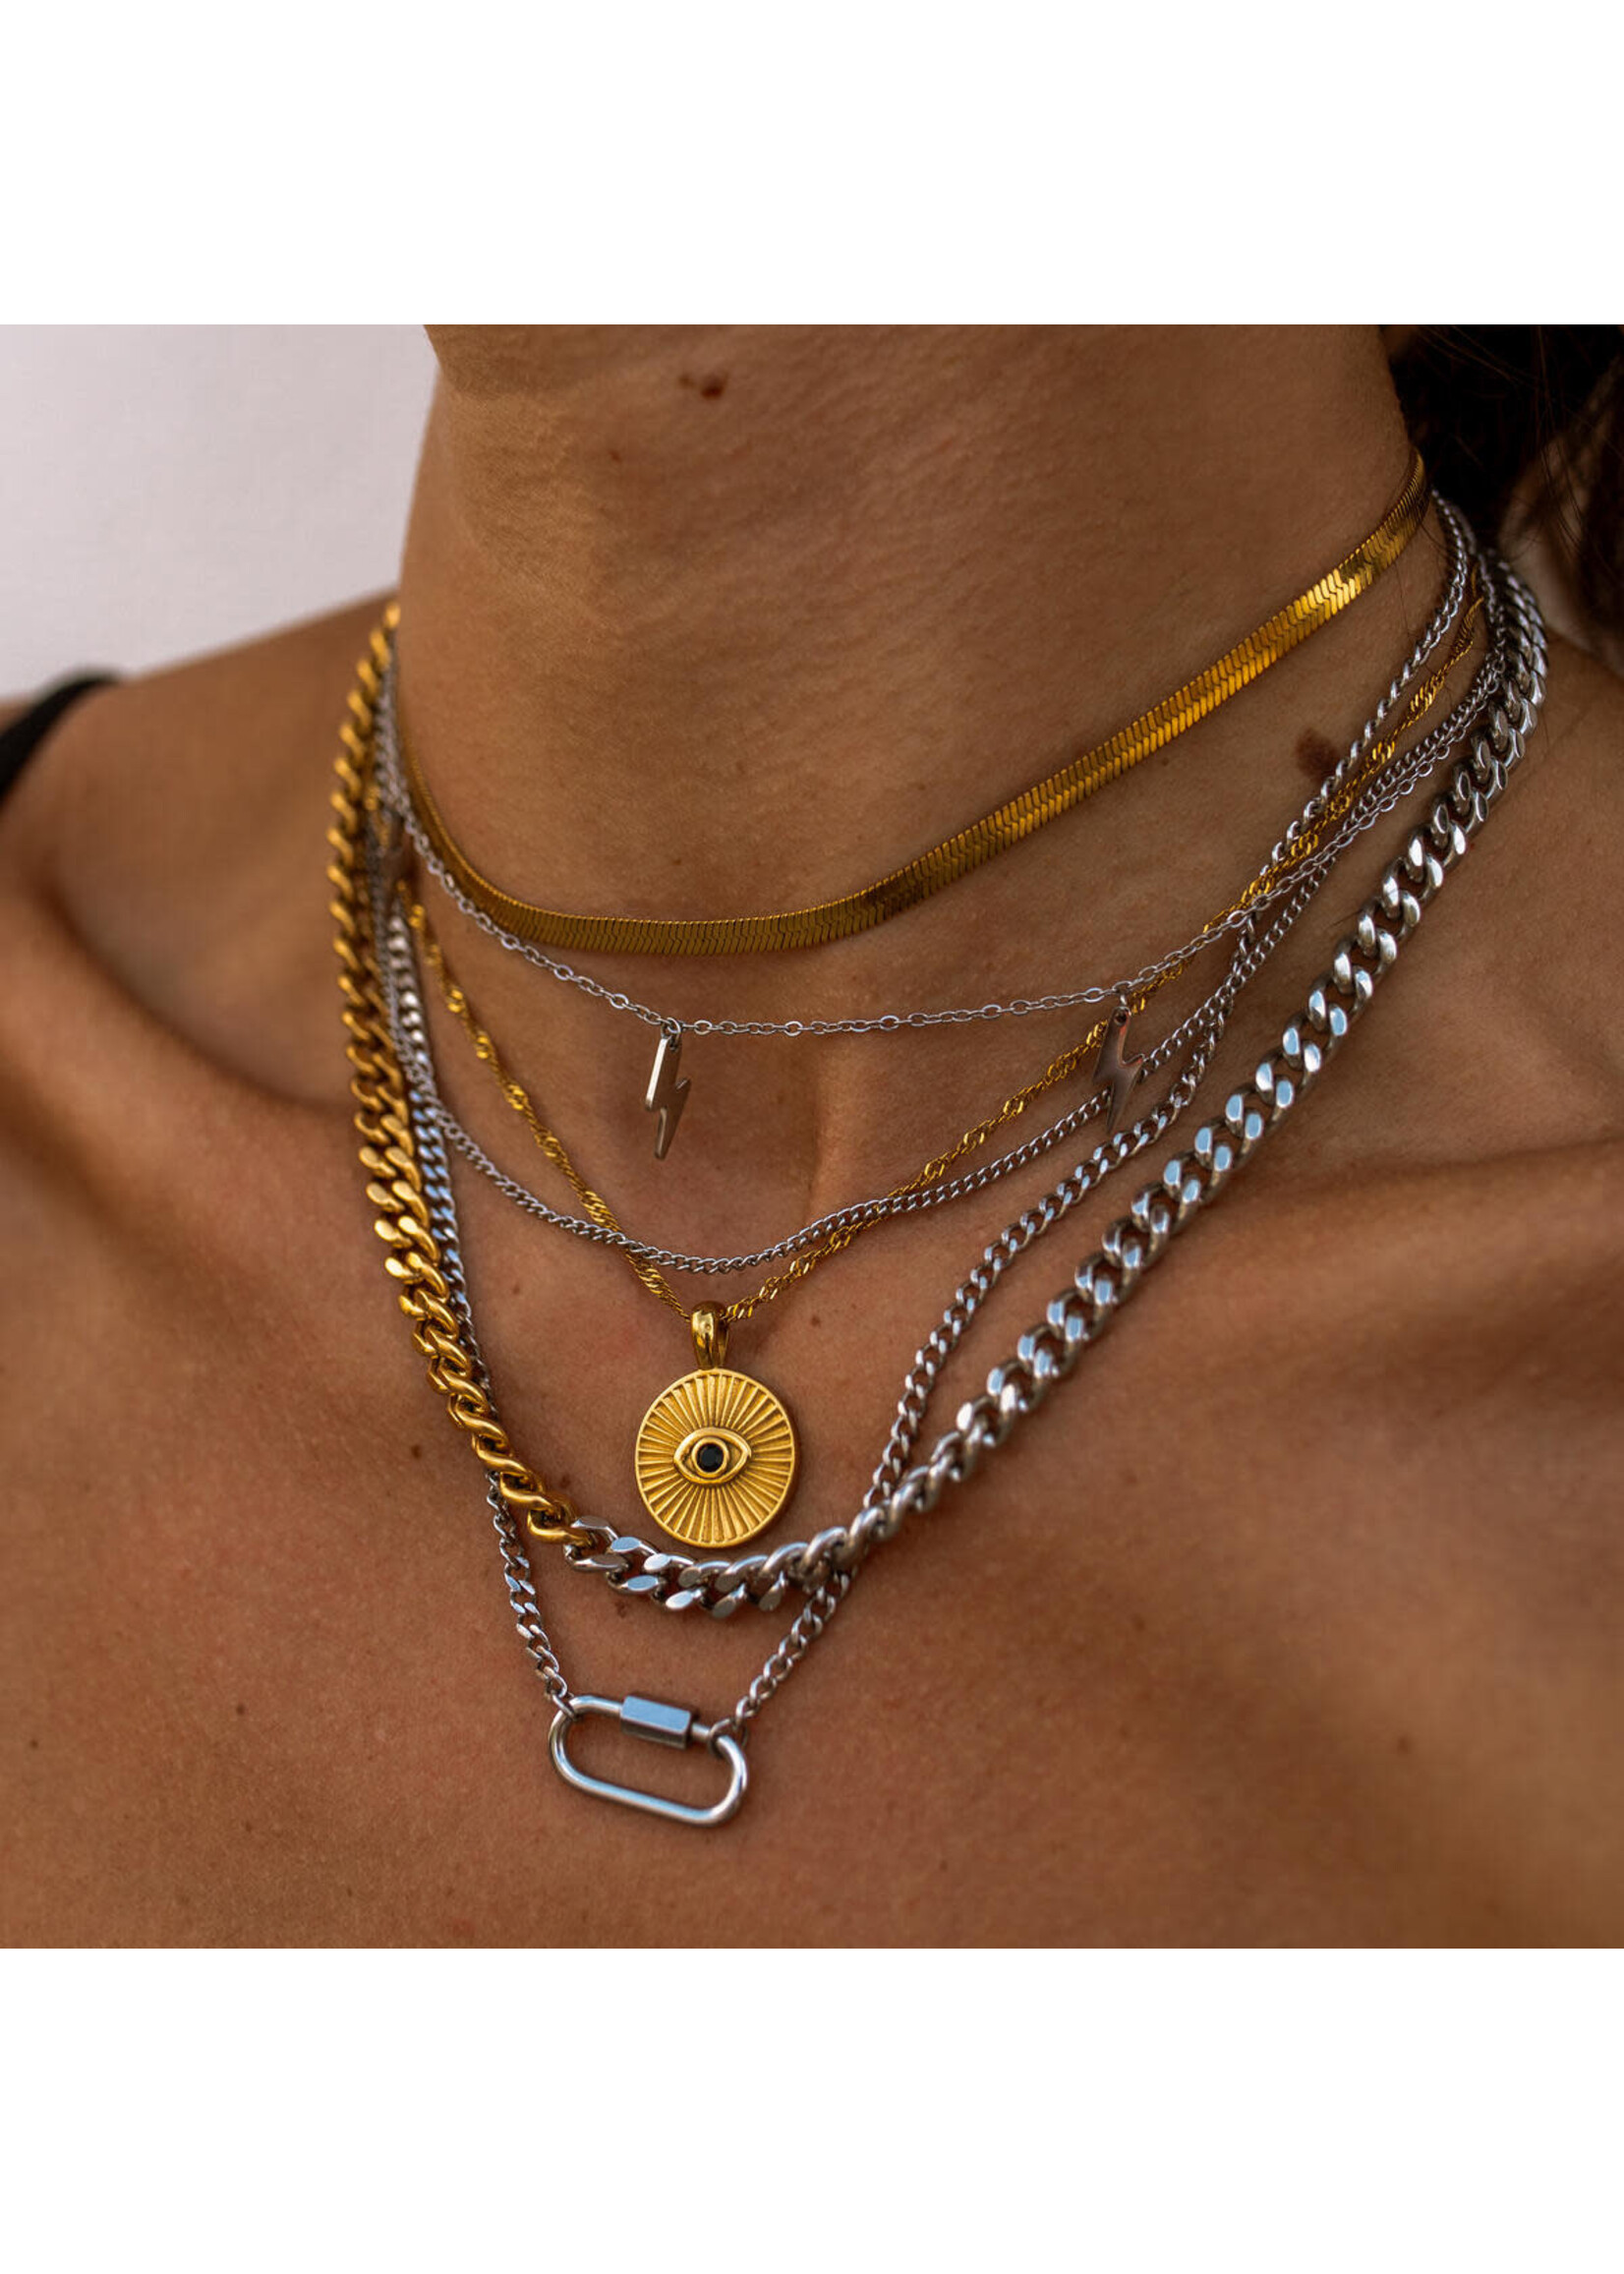 ALCO Jewelry Zion Necklace